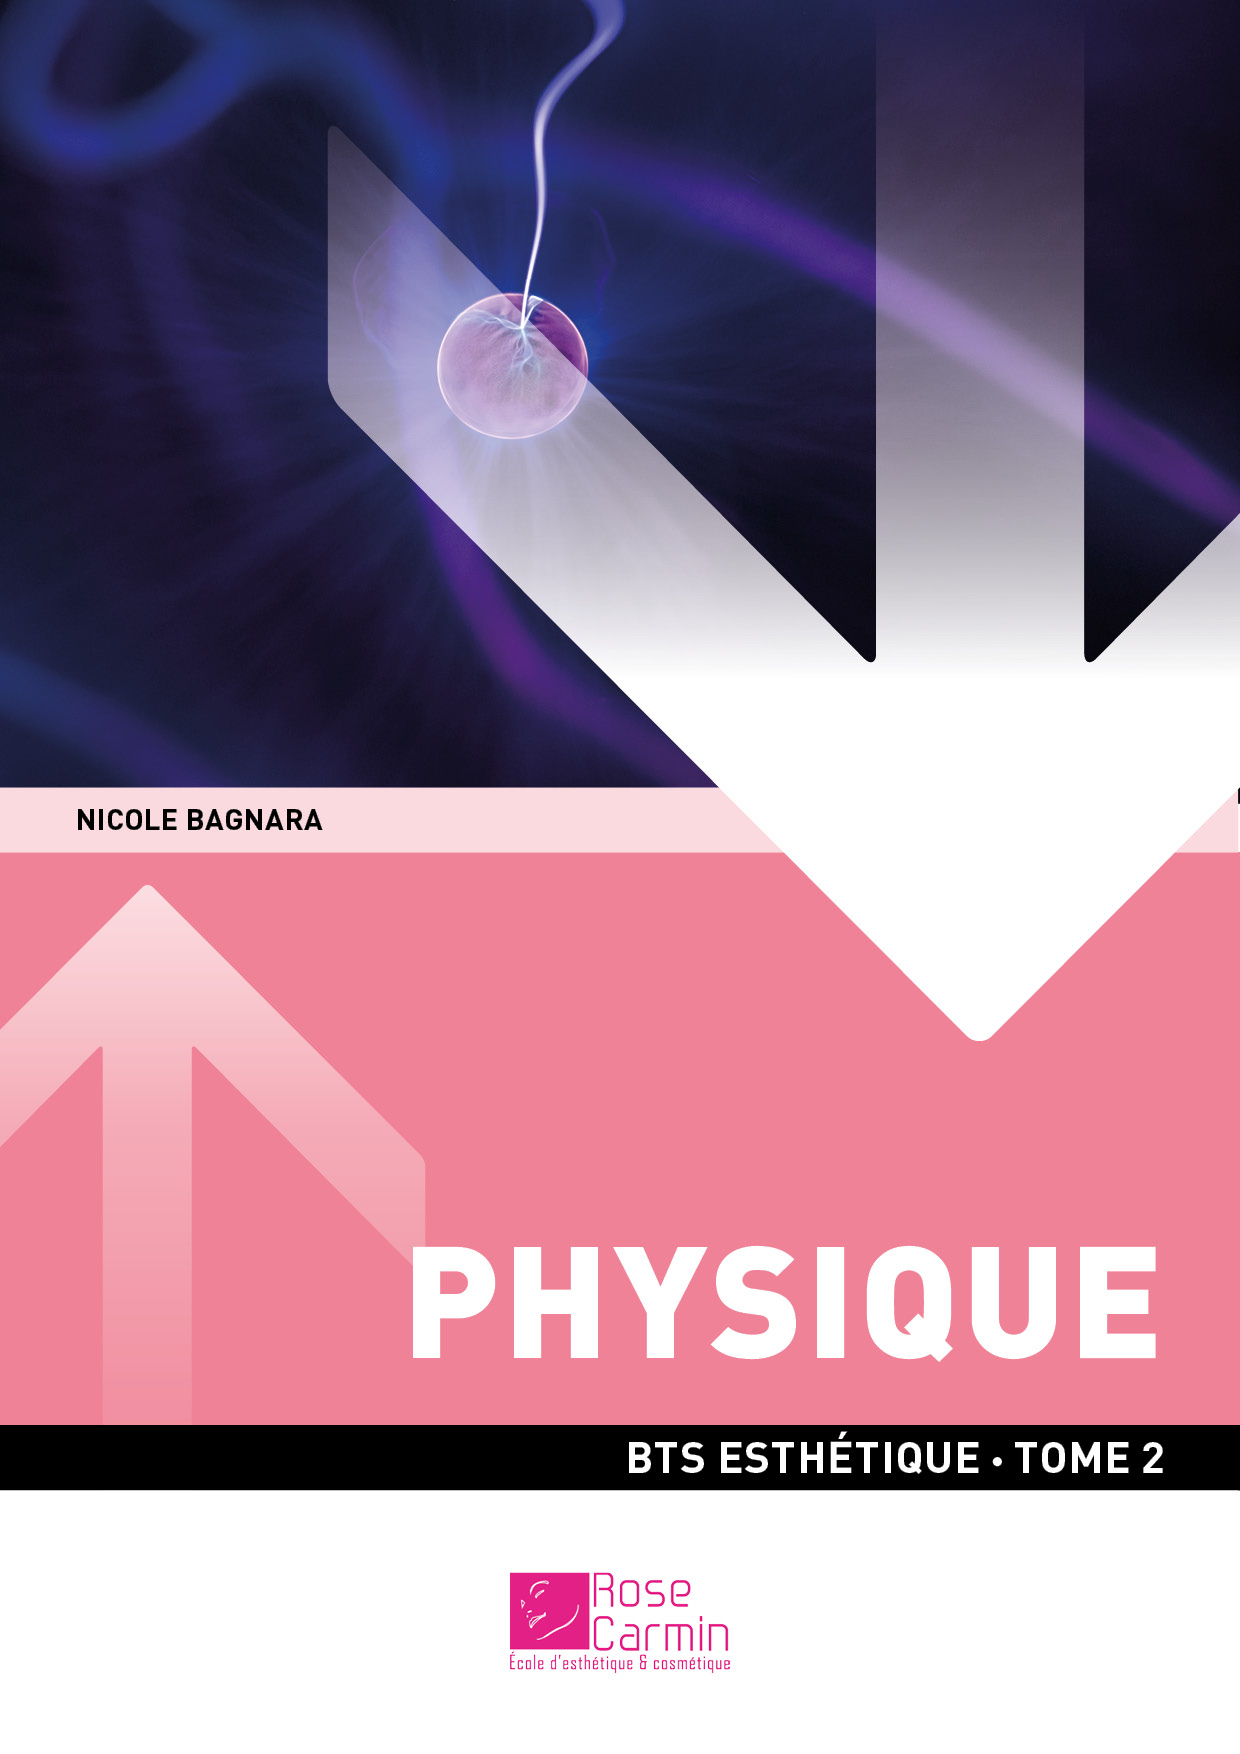 BTS ESTH - Physique T2